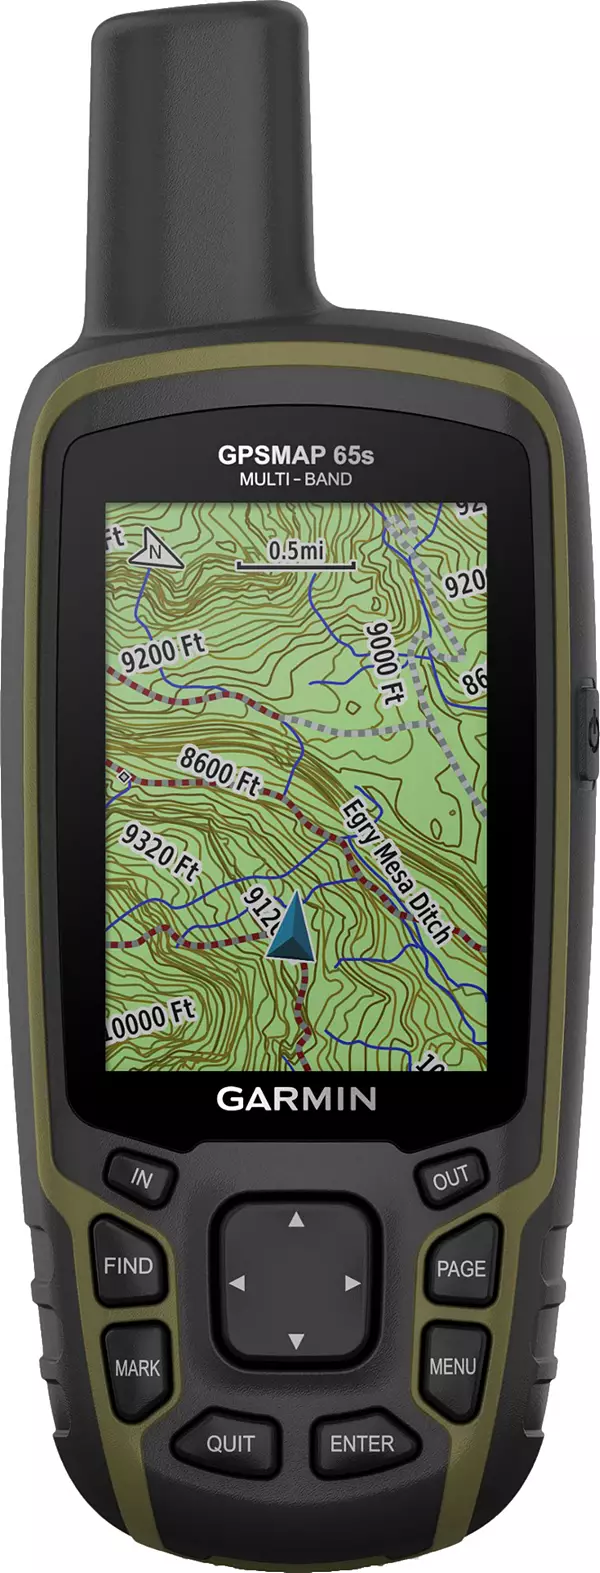 Garmin eTrex 32x GPS, Price Match + 3-Year Warranty